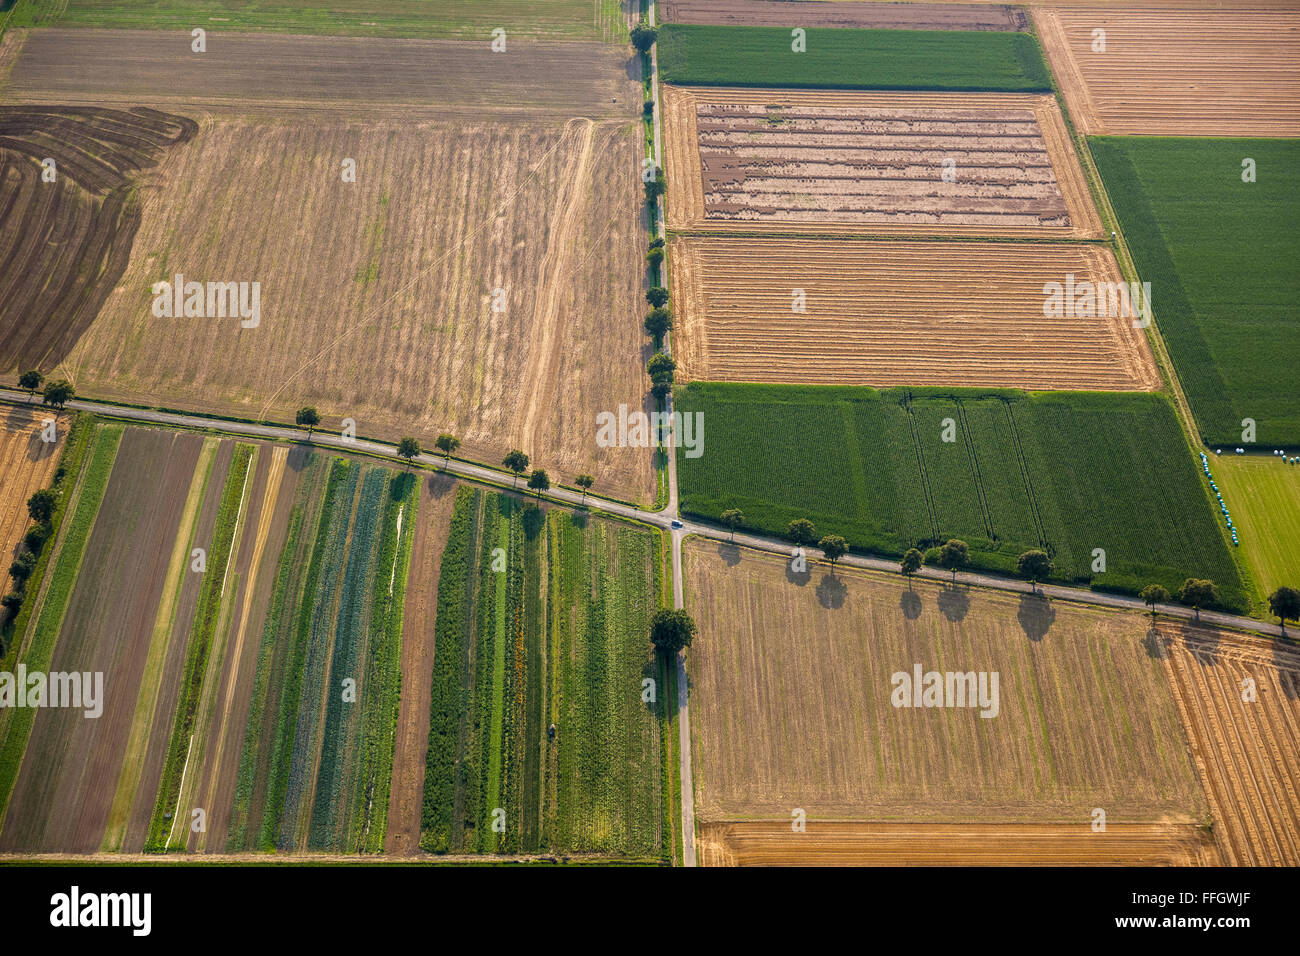 Vista aerea, crociera le strade di campagna, campi, vicoli, retroilluminato, ereditarietà, la rotazione delle colture, Welver, Soester Plain, Foto Stock